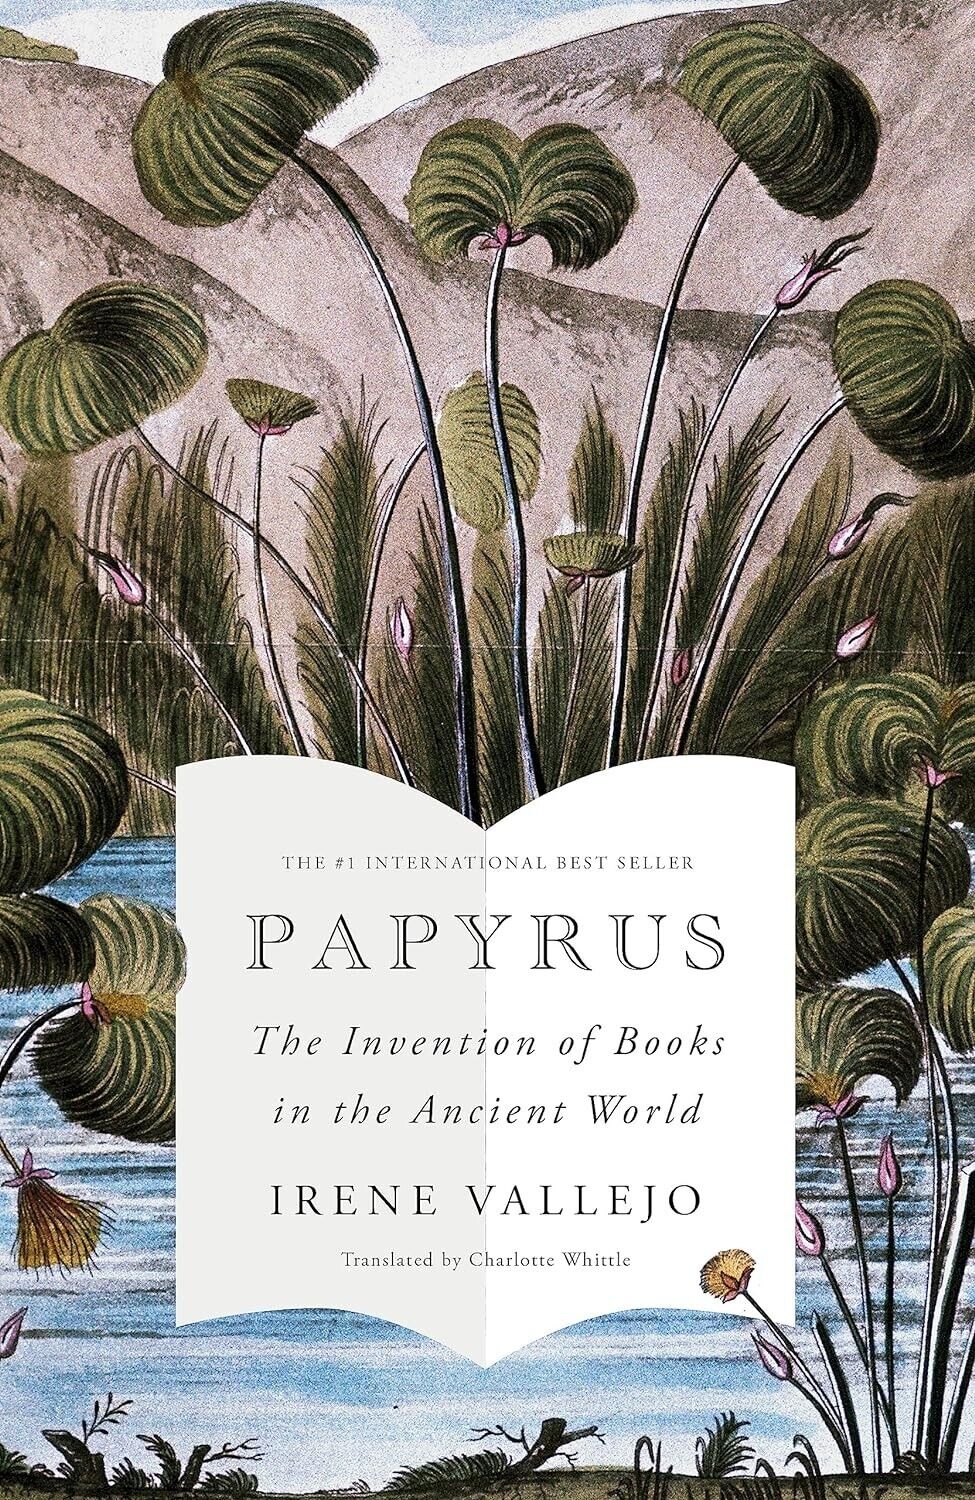 Papyrus: The Invention of Books in the Ancient World ร้านหนังสือและสิ่งของ เป็นร้านหนังสือภาษาอังกฤษหายาก และร้านกาแฟ หรือ บุ๊คคาเฟ่ ตั้งอยู่สุขุมวิท กรุงเทพ